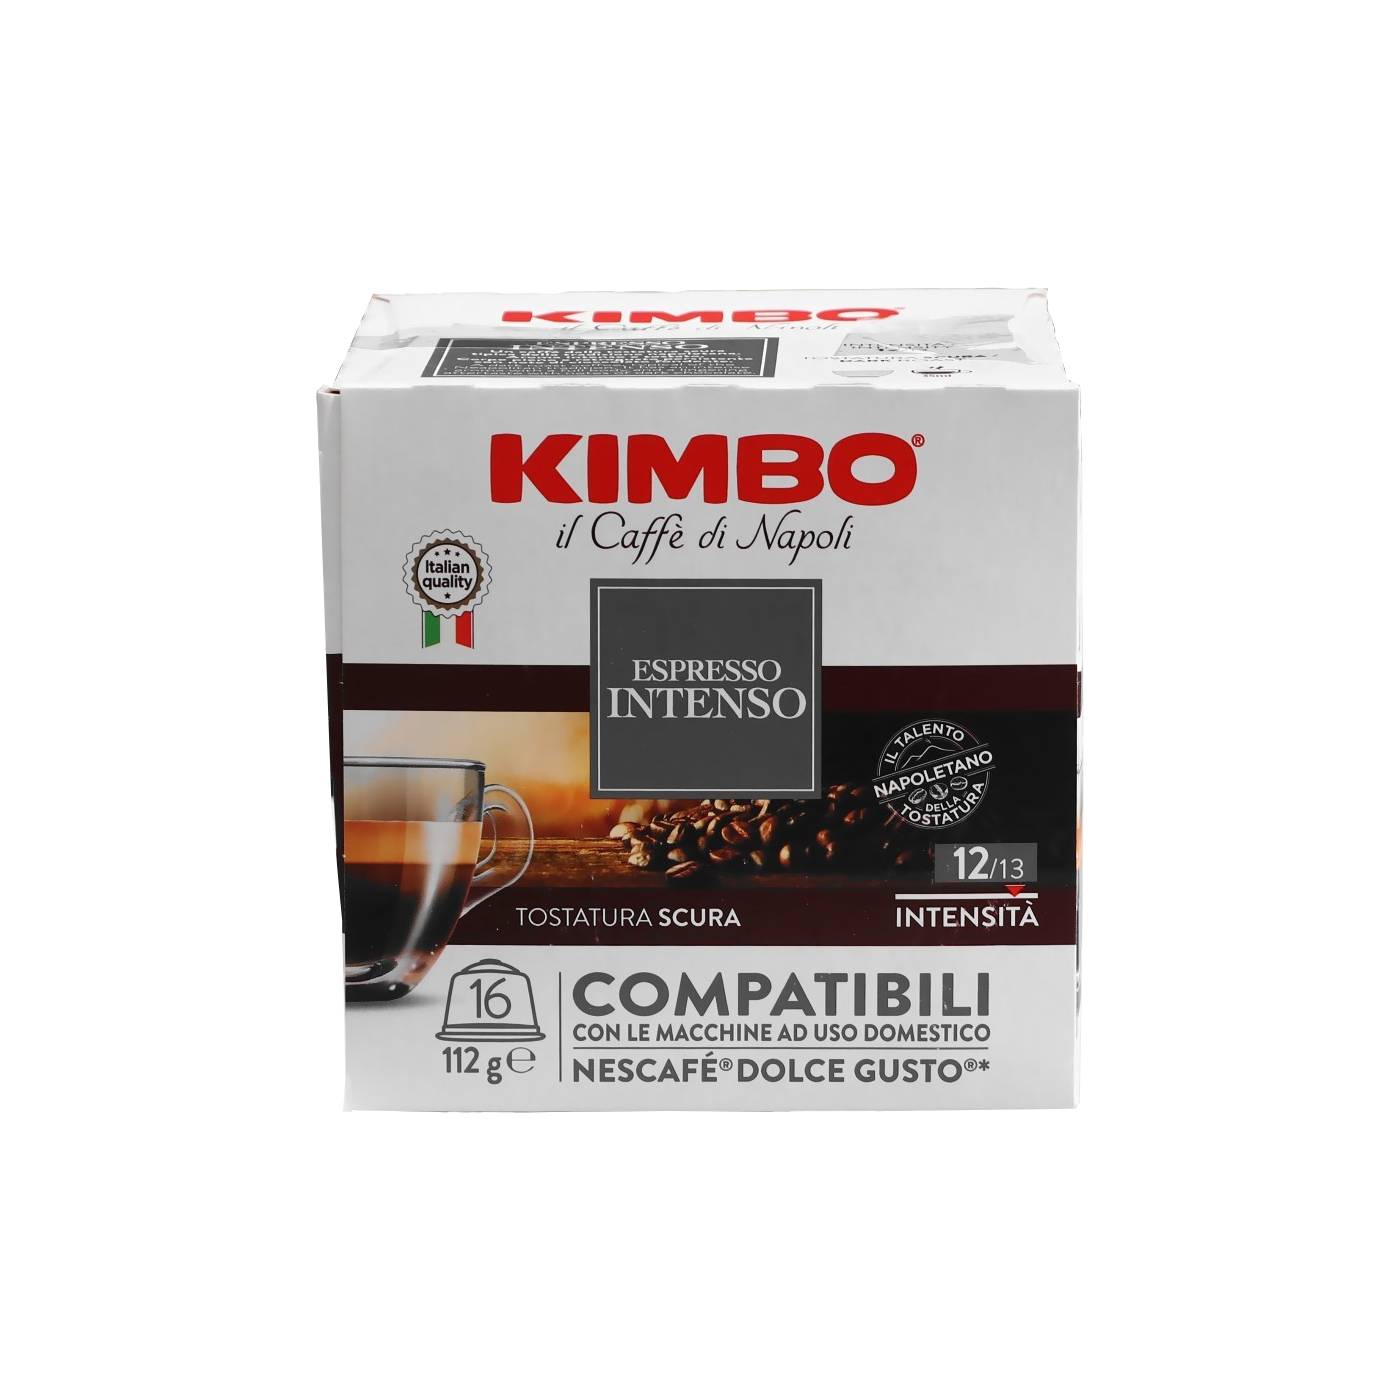 Кофе в капсулах Kimbo Dg Intenso, 6 шт кофе в капсулах kimbo dg intenso 6 шт